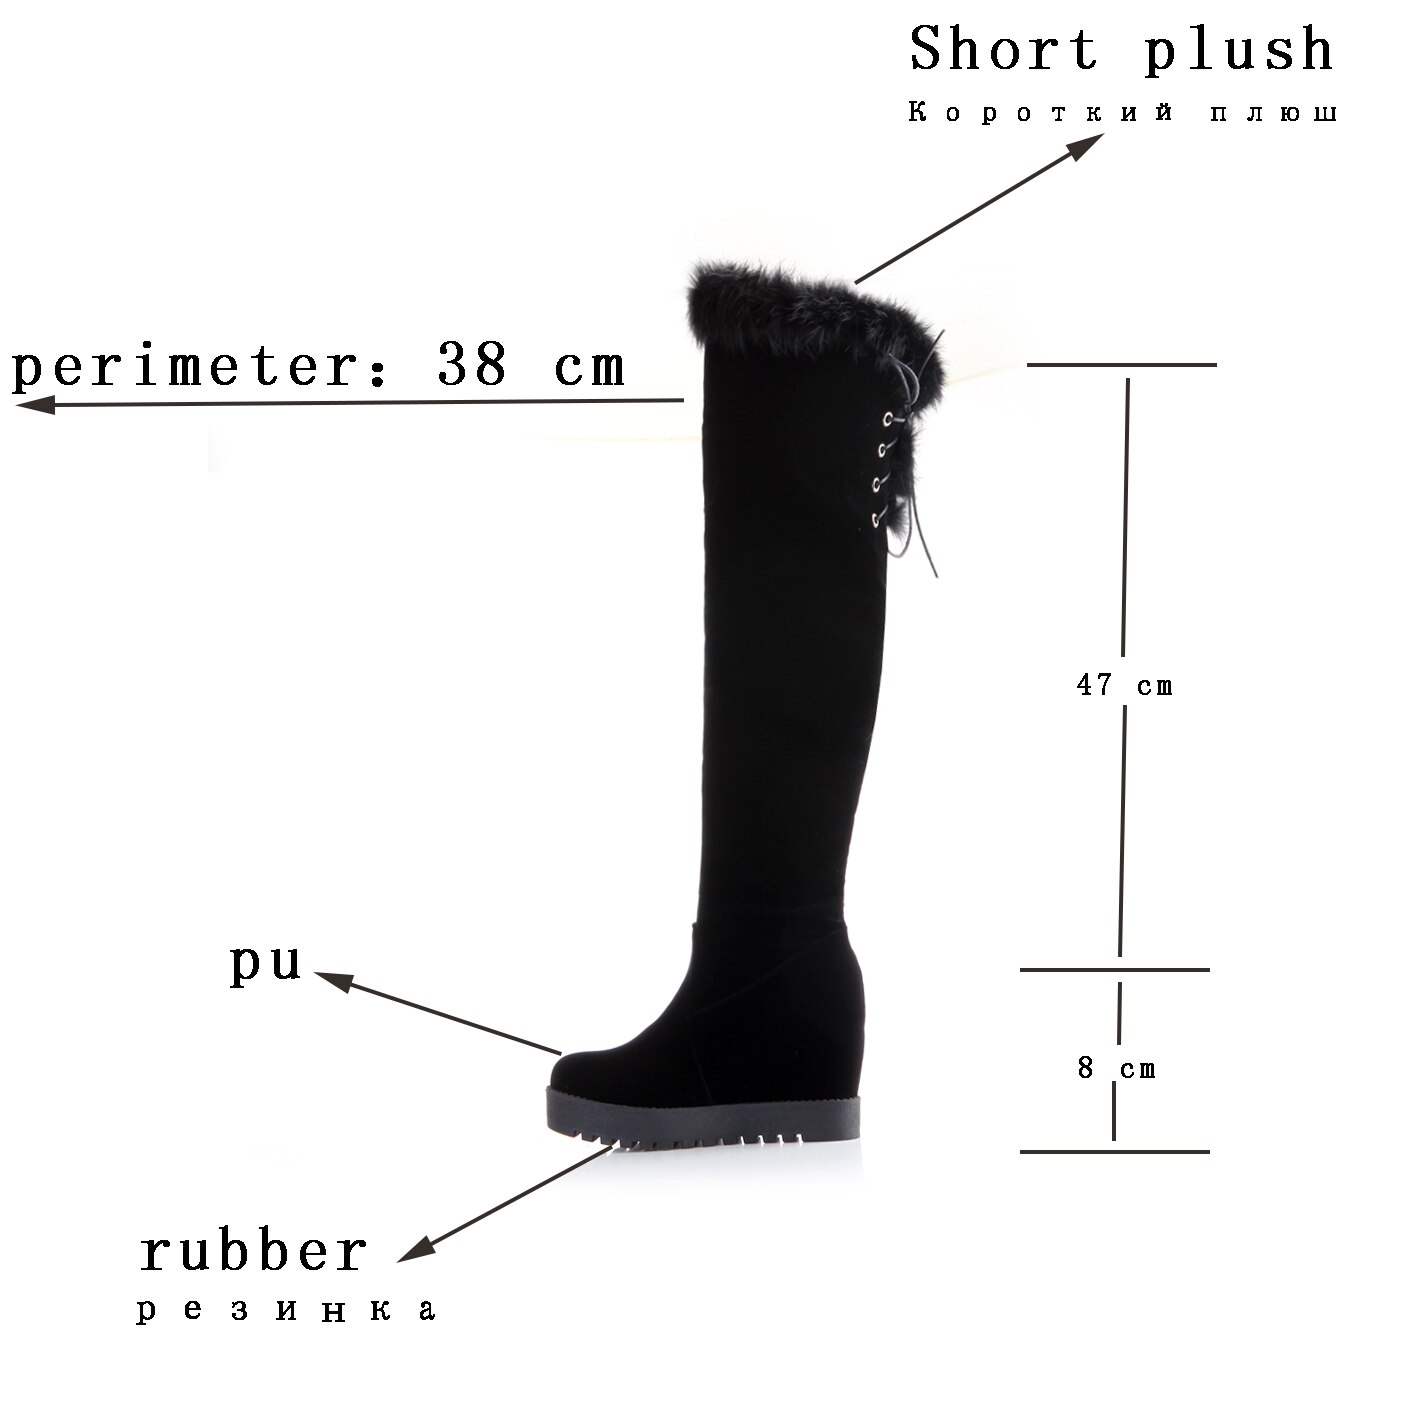 MBR FORCE femmes bottes à glissière en peluche décoration bout rond tout match hiver en cuir pu talon compensé bottes hautes